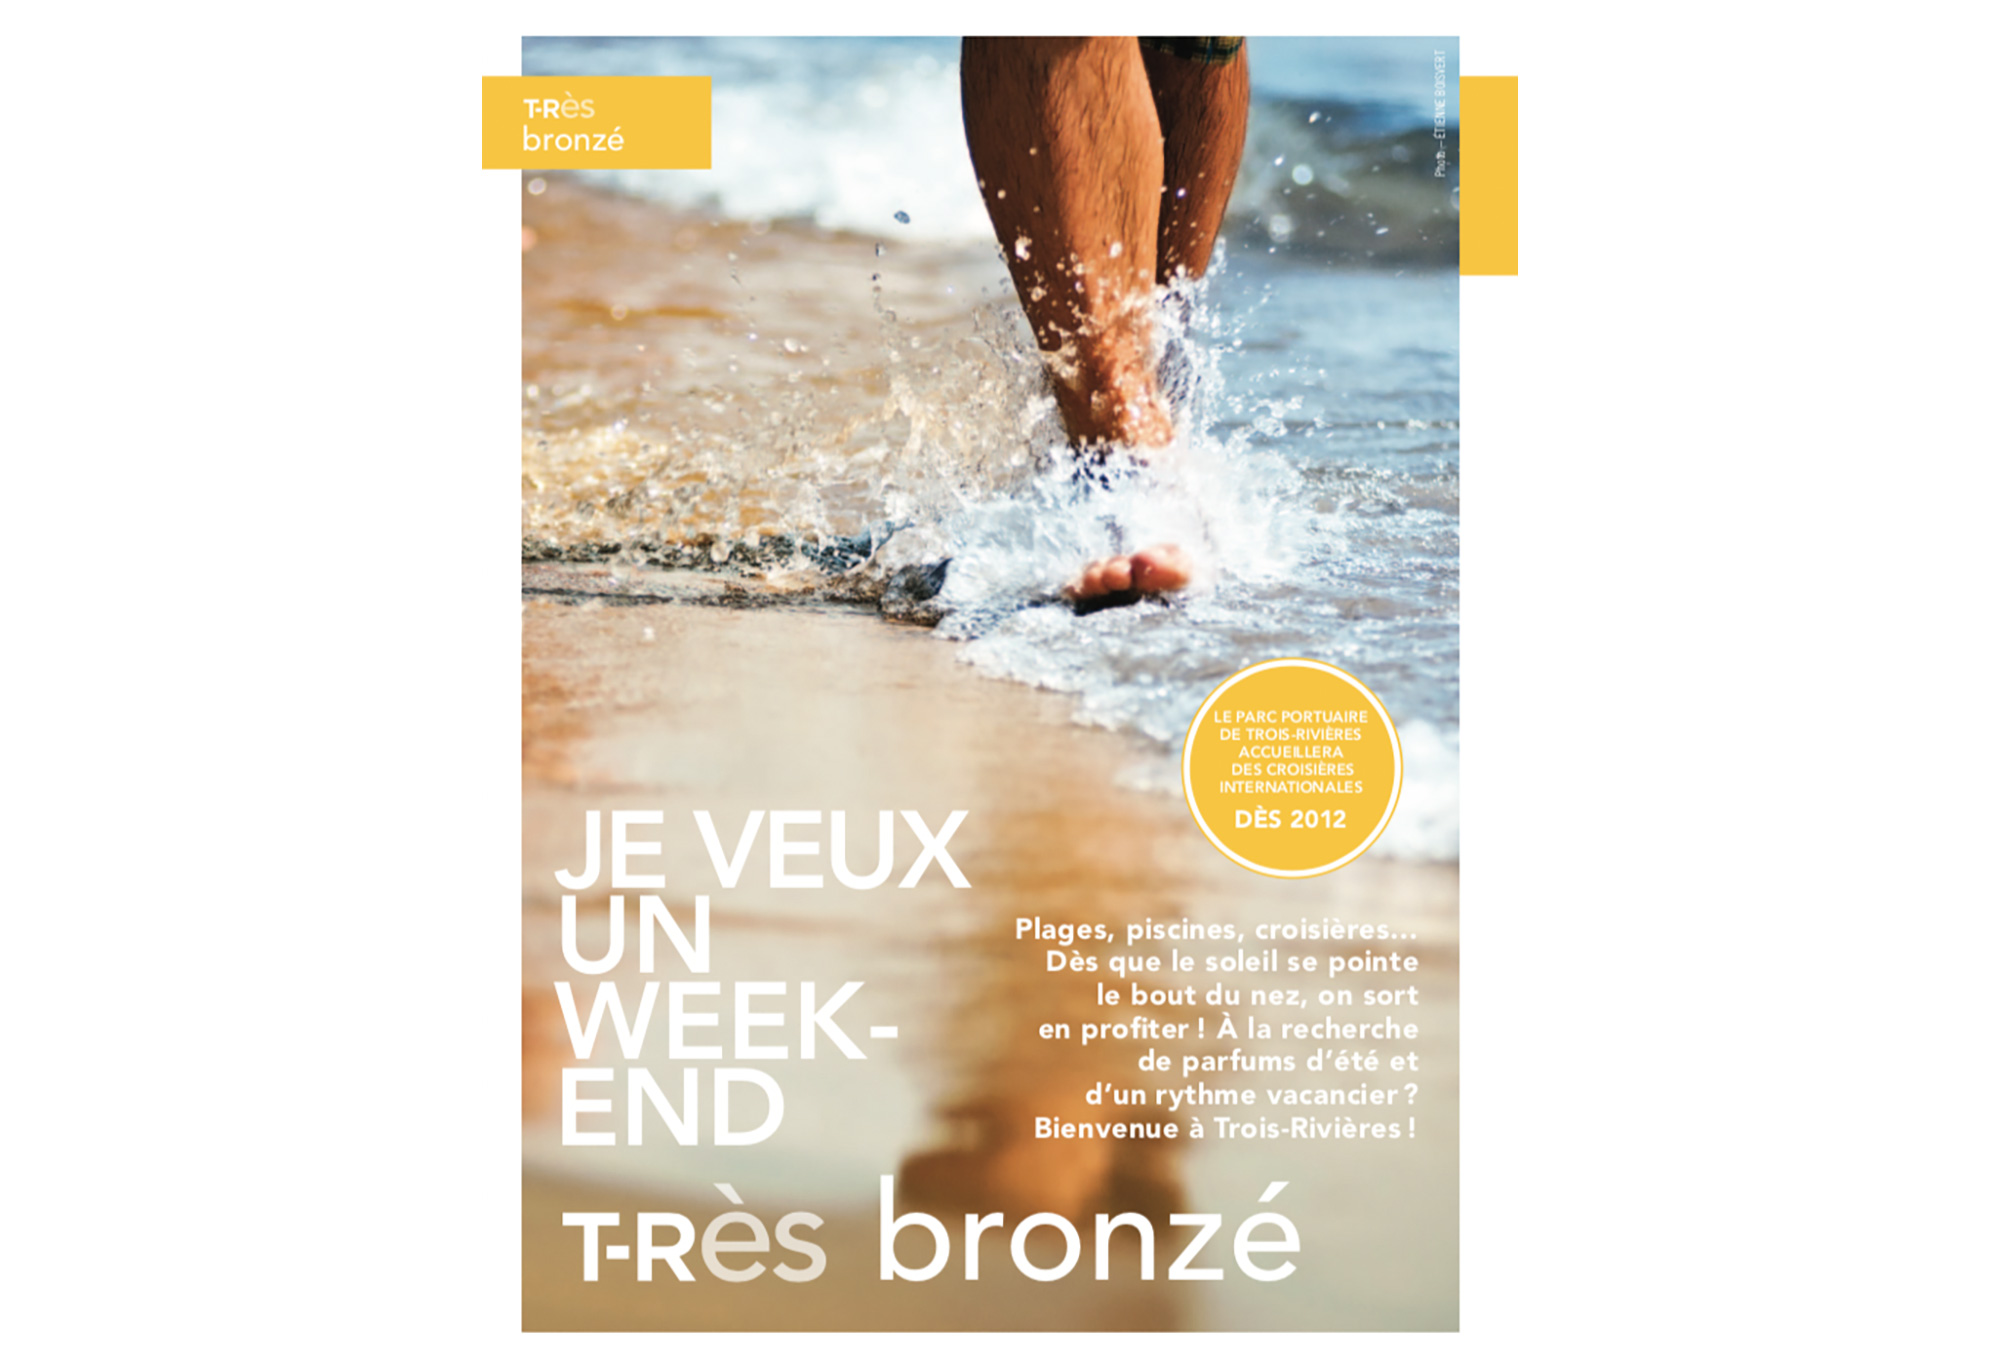 Tourisme Trois-Rivières - T-RÈS magazine